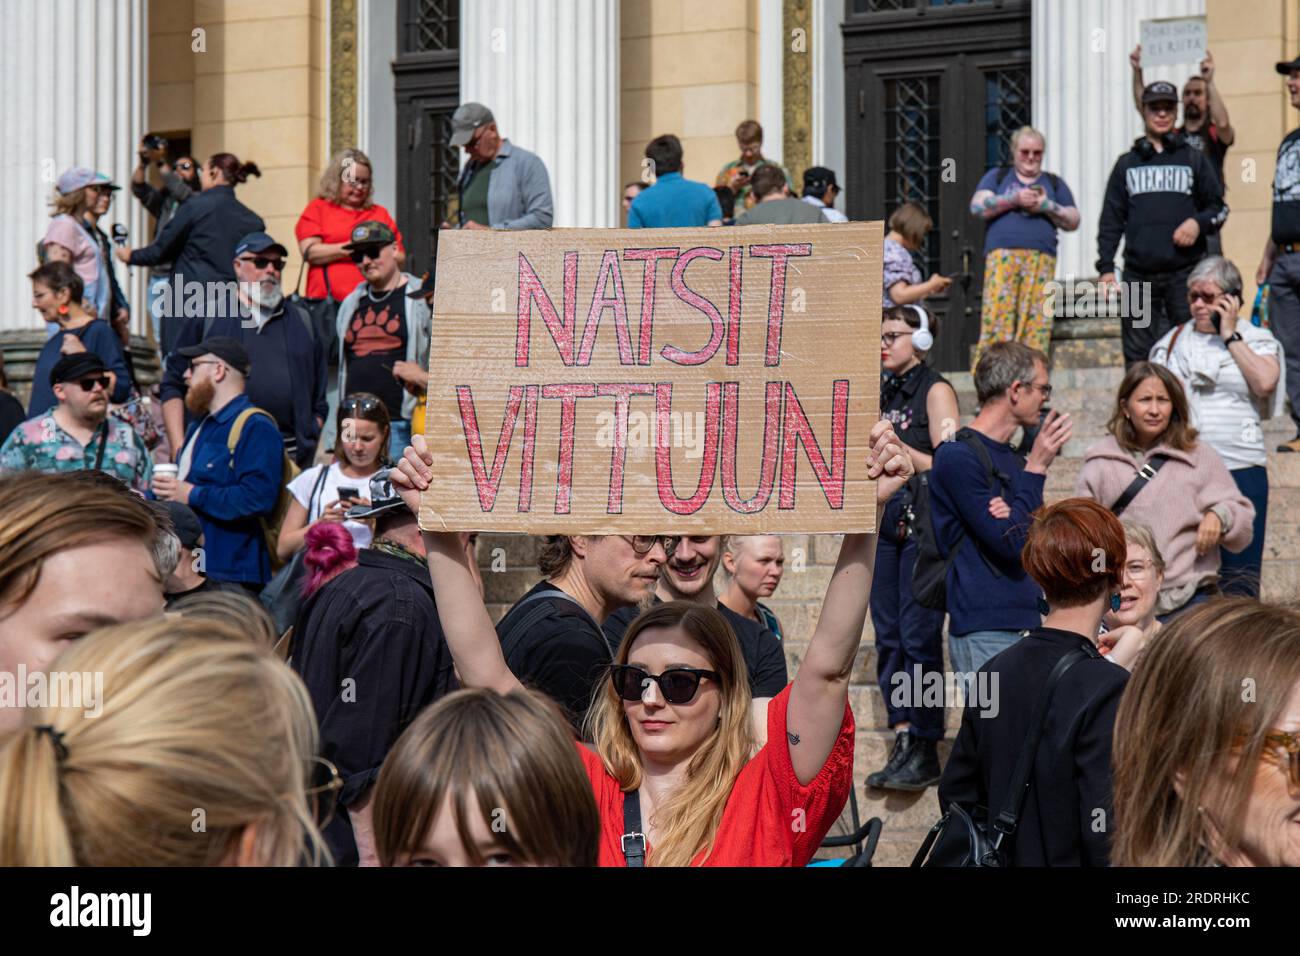 Natsit vittuun. Manifestante con un cartello di cartone al raduno davanti a Nollatoleranssi! Manifestazione di fronte a Säätytalo a Helsinki, Finlandia. Foto Stock